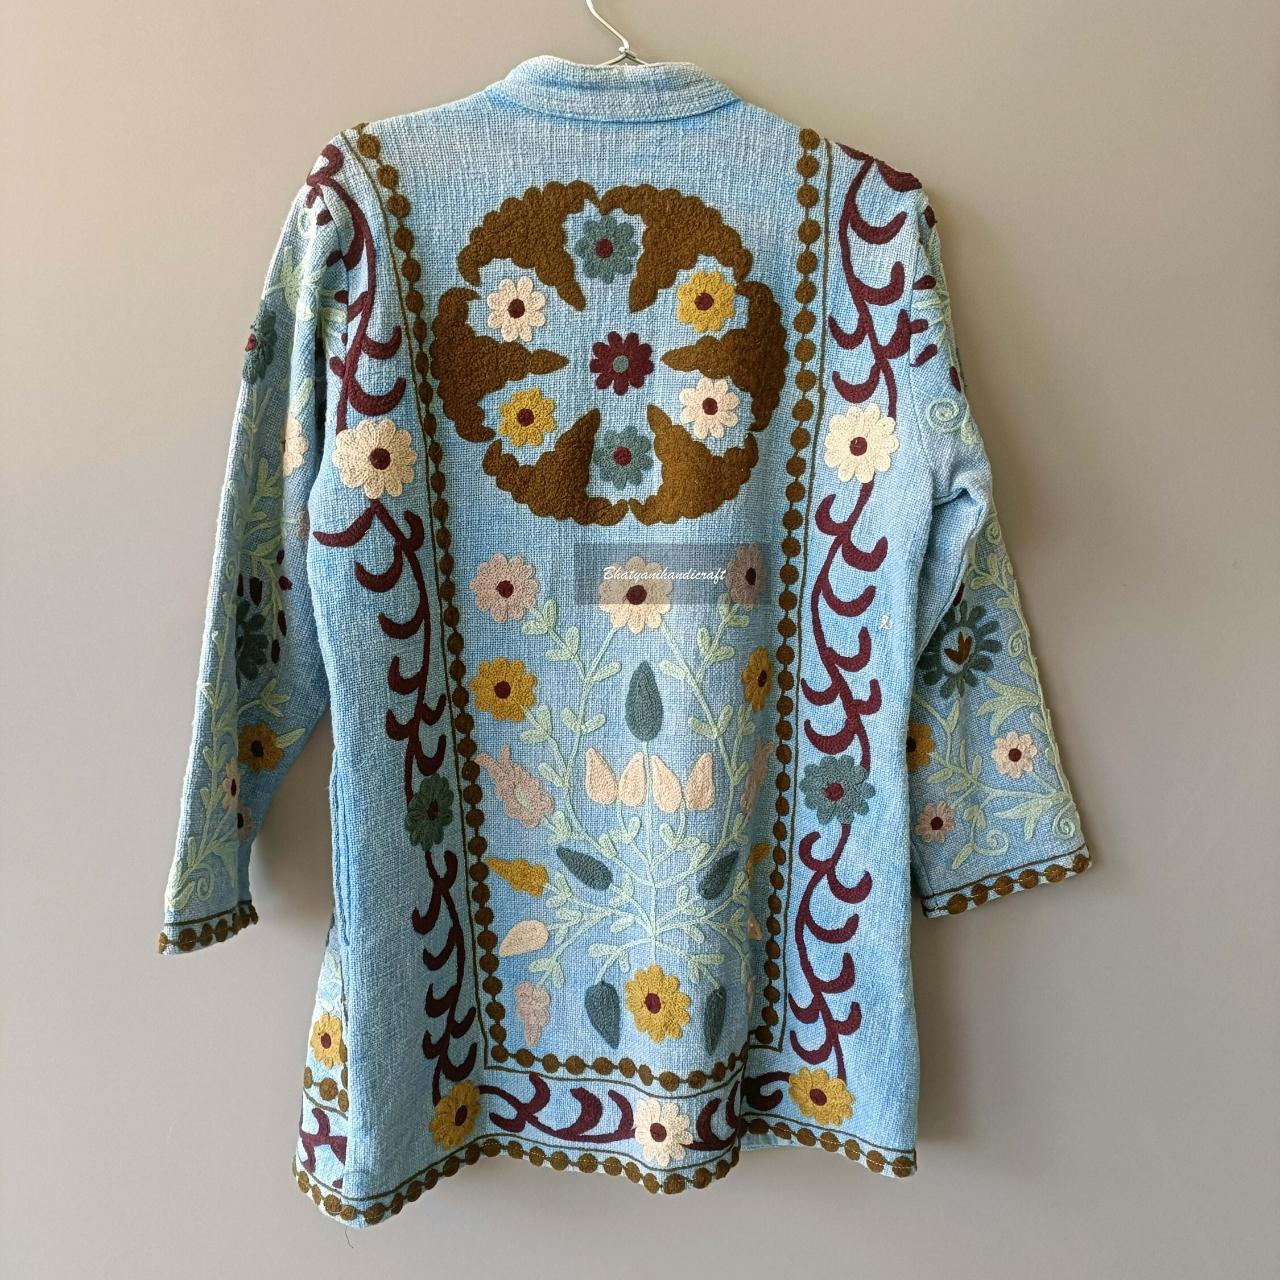 New Suzani Embroidery Jacket, Winter Jacket, Womens... - Depop